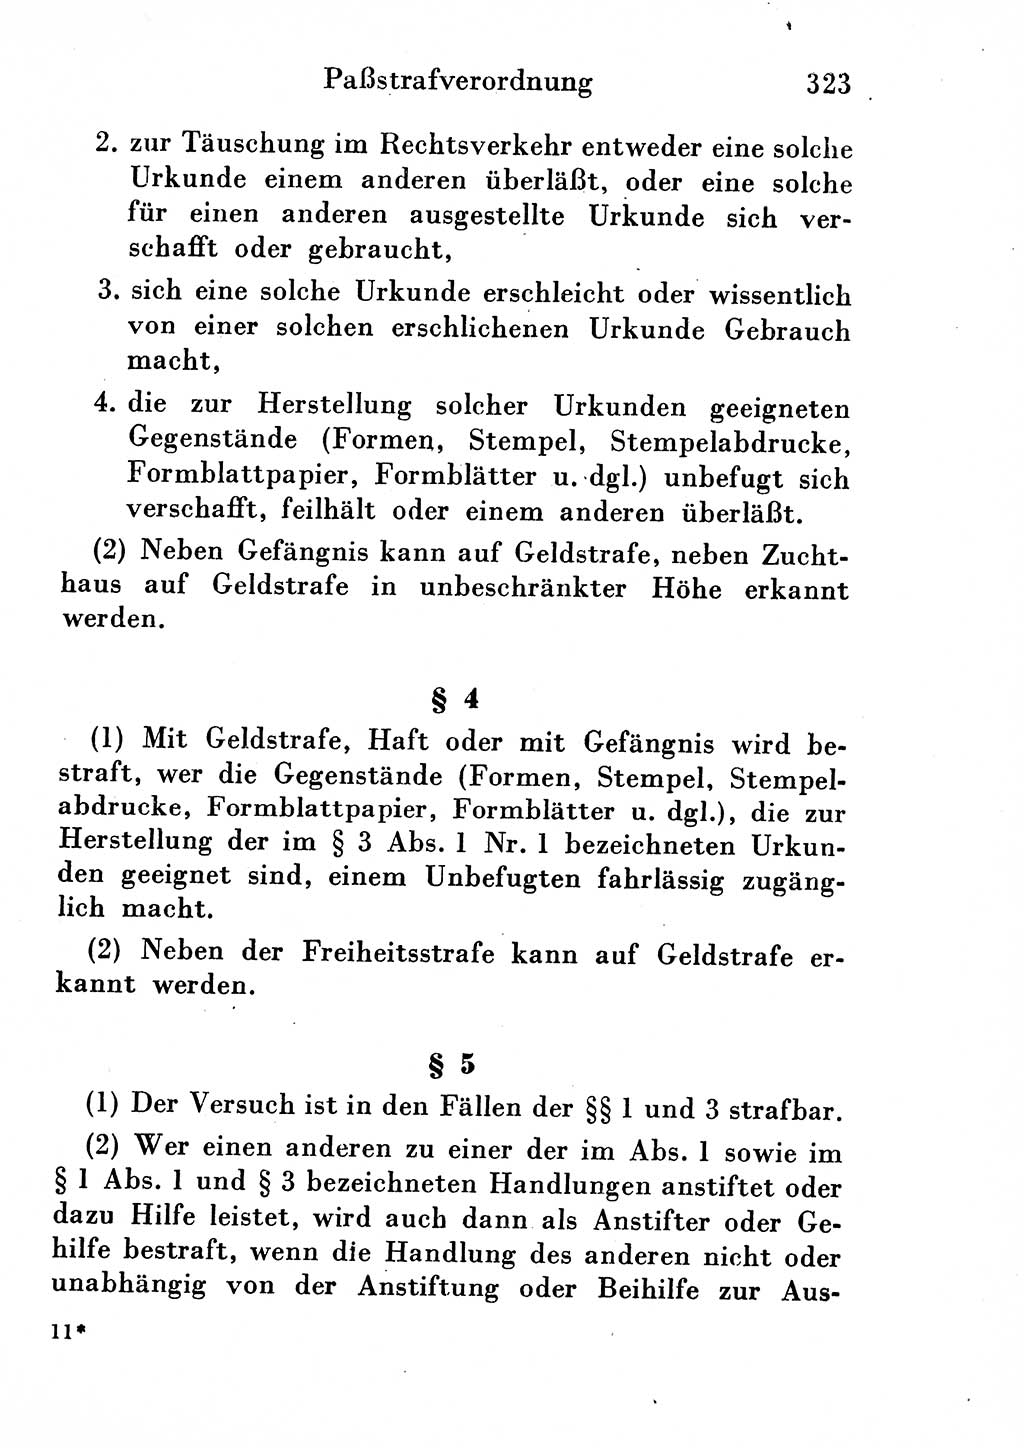 Strafgesetzbuch (StGB) und andere Strafgesetze [Deutsche Demokratische Republik (DDR)] 1954, Seite 323 (StGB Strafges. DDR 1954, S. 323)